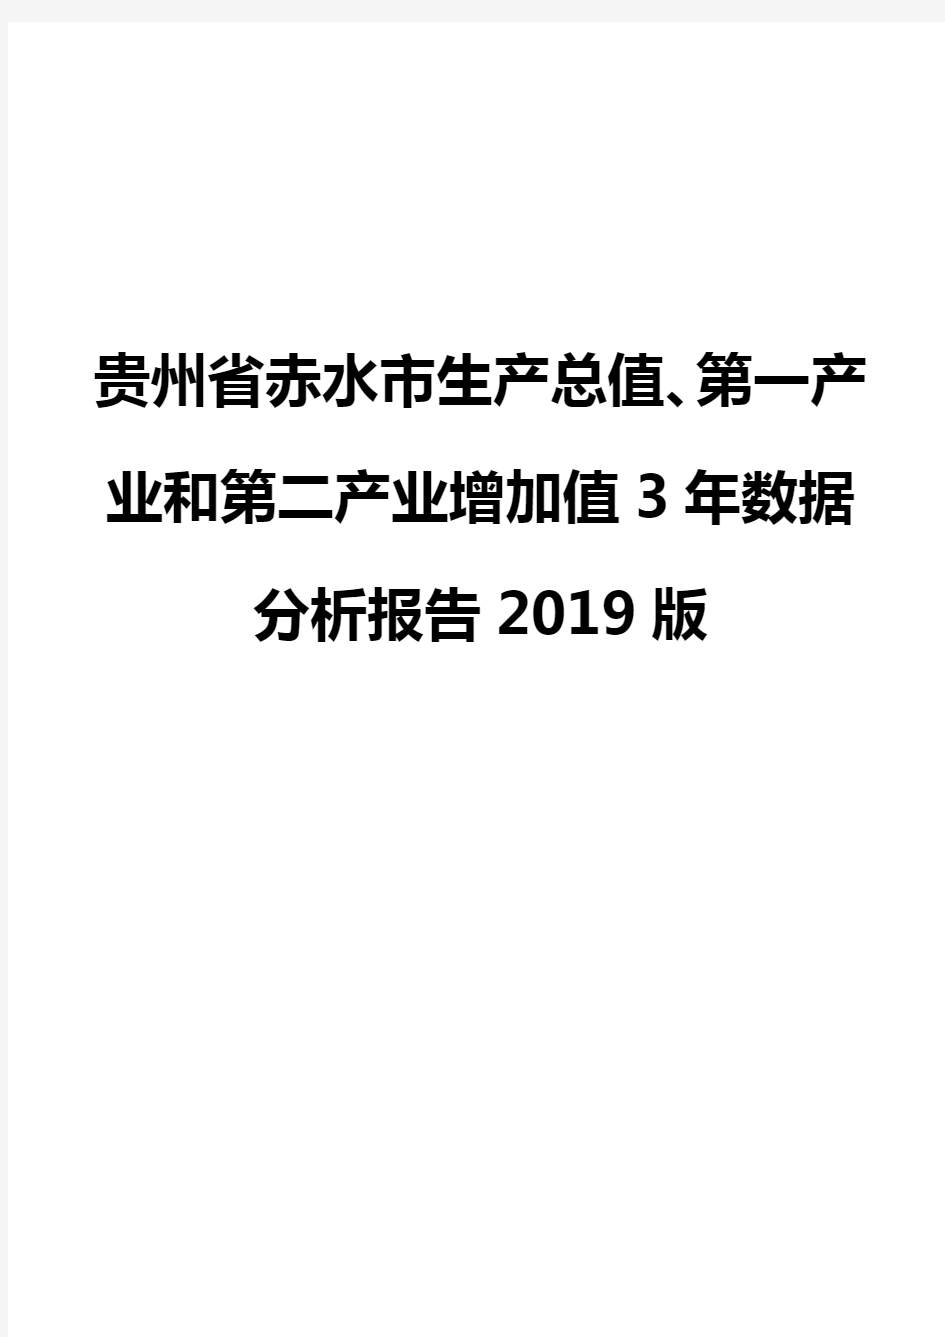 贵州省赤水市生产总值、第一产业和第二产业增加值3年数据分析报告2019版